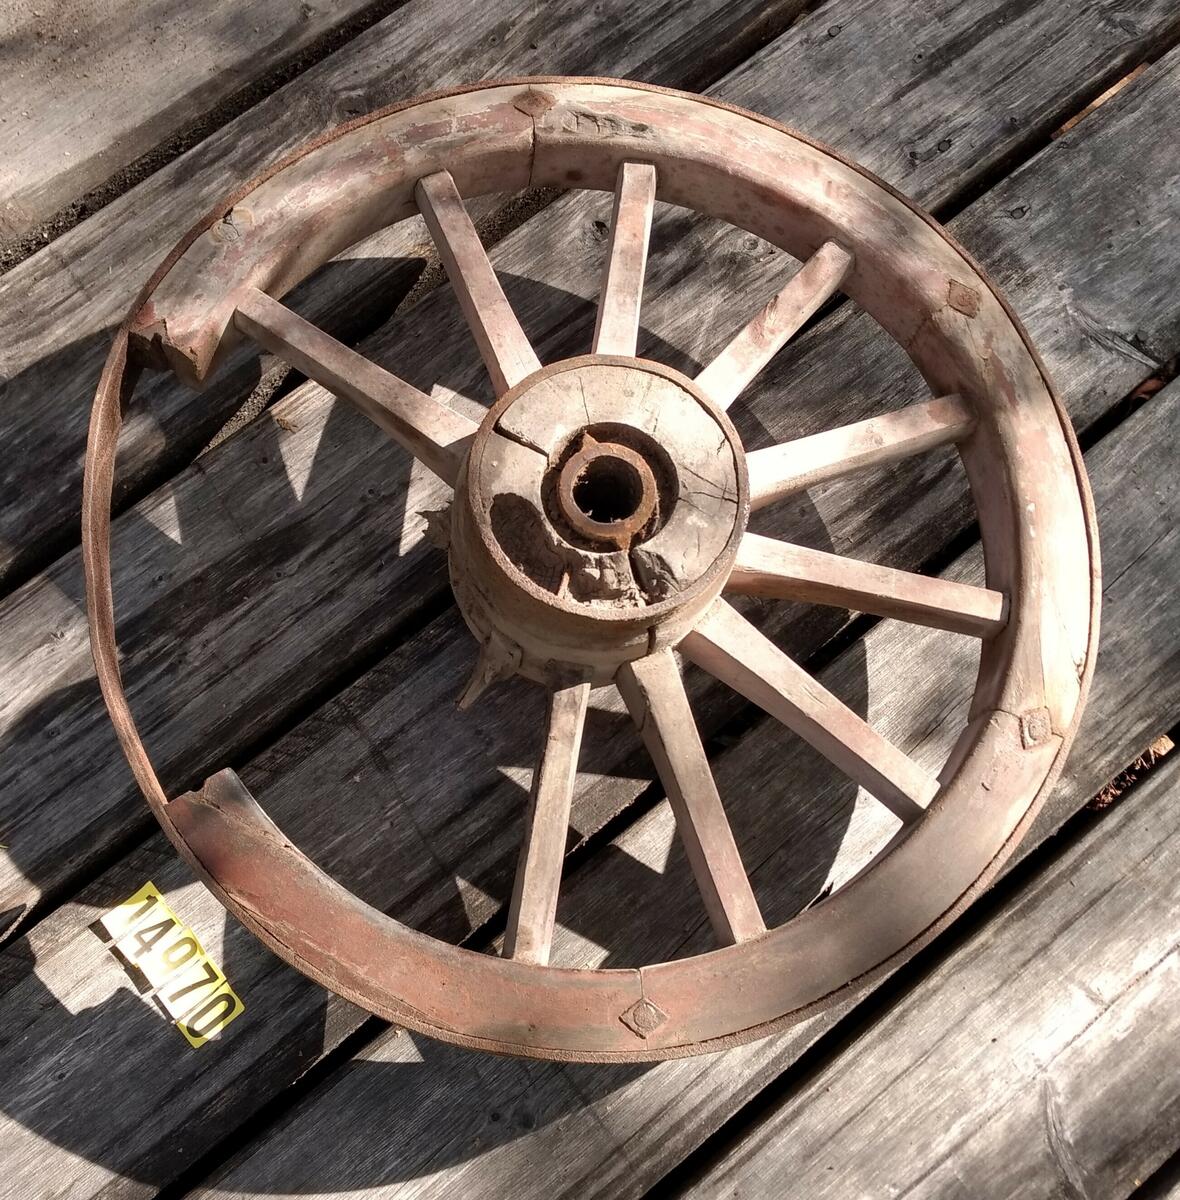 Rödmålat hjul med tolv ekrar, två tre saknas. Hel järnskoning runt nav och hjul. Hjulet / Löte är delat i sex delar med två ekrar. 1/6 av lötet saknas helt och 1/6 är skadad. Kan ev. vara MFF4141? De har bredd 63 cm. Plac: L1AA2.